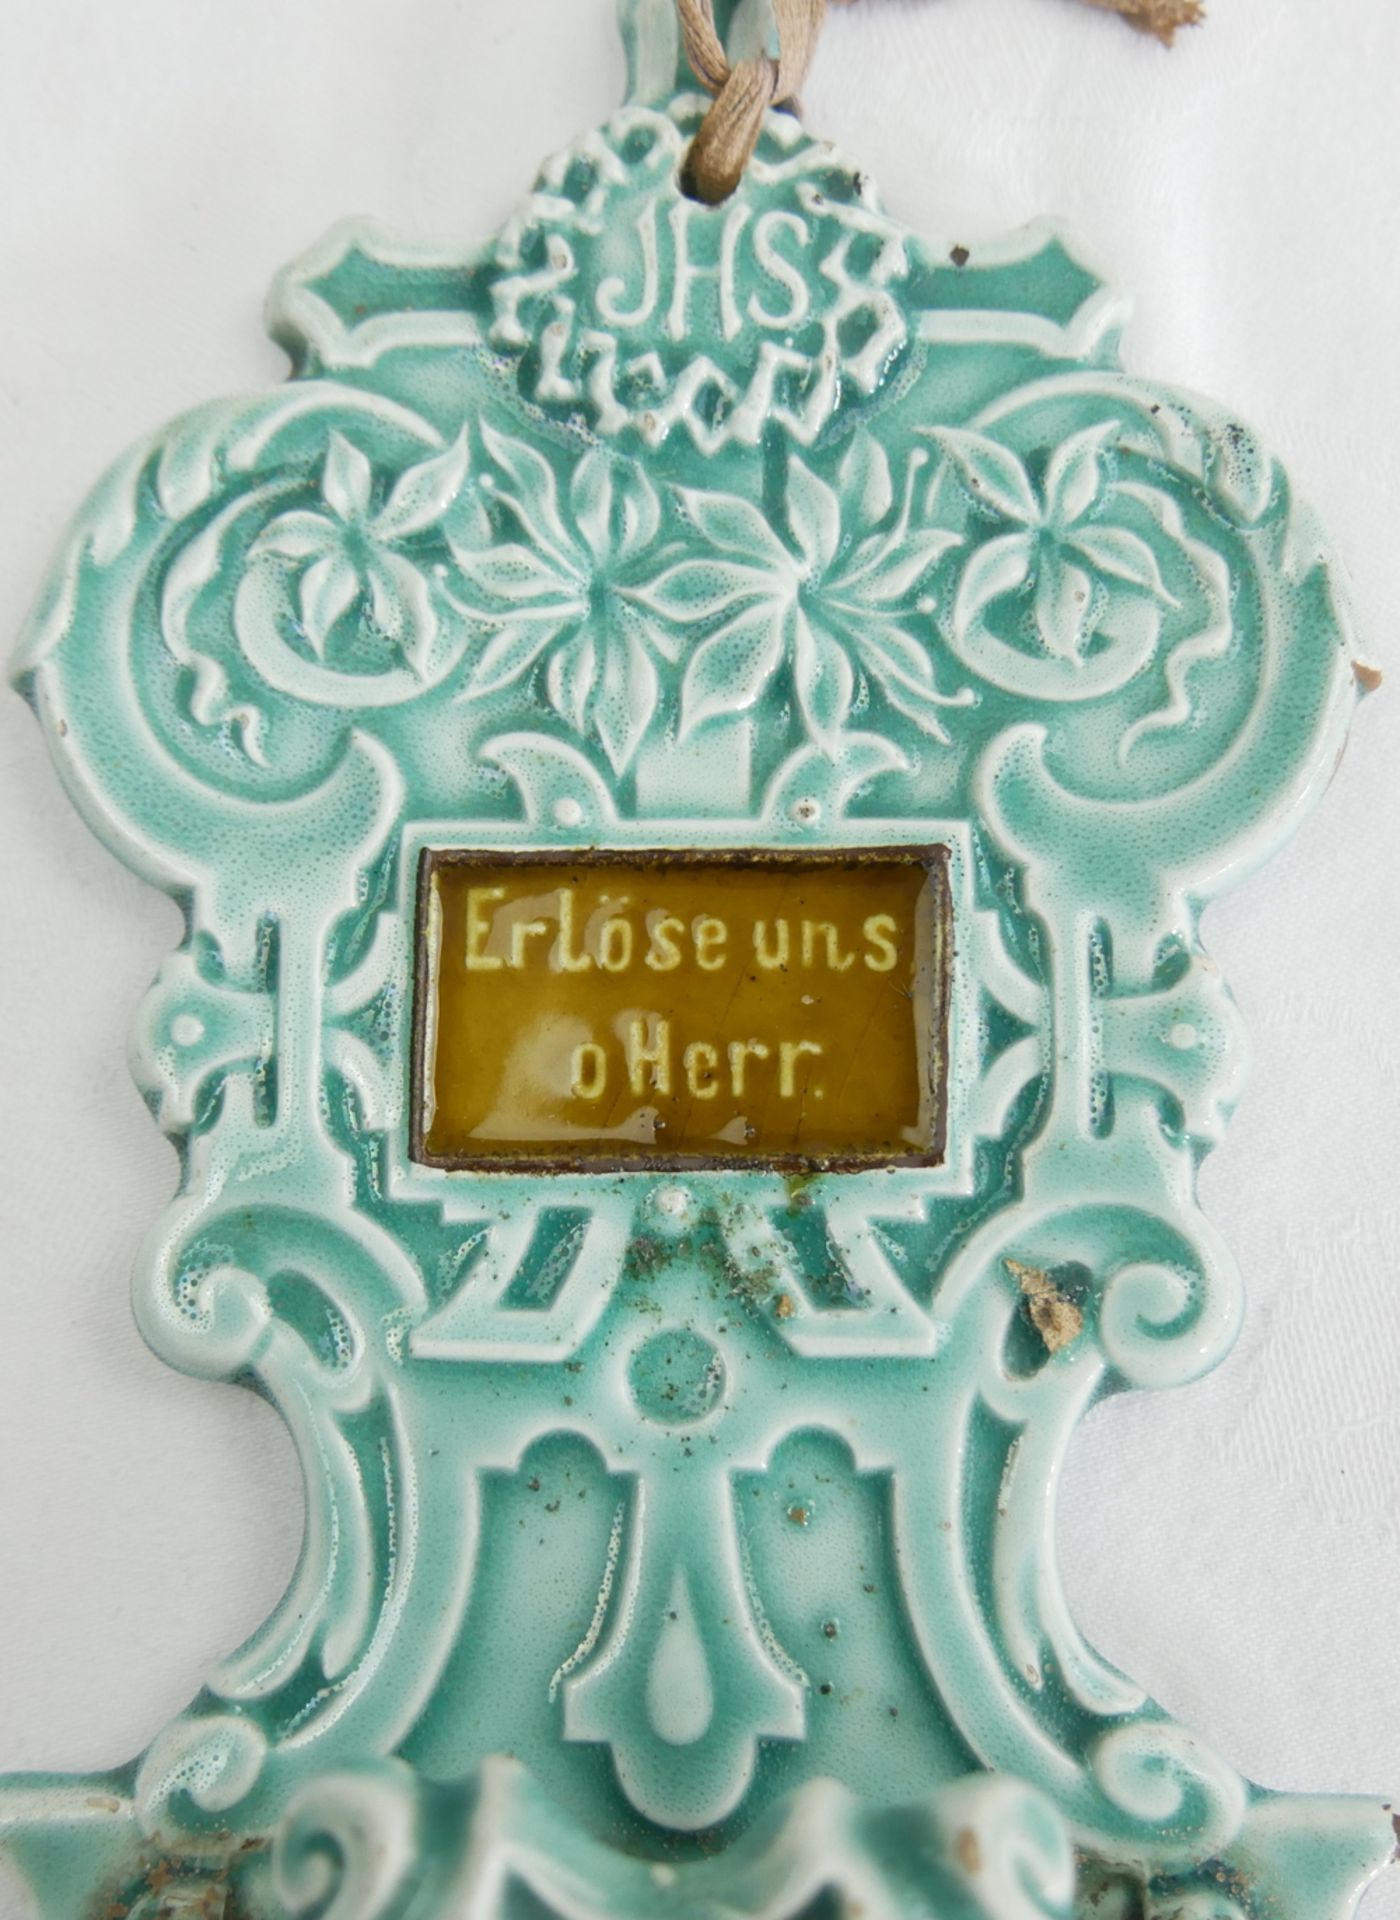 Altes Weihwassergefäß V&B, Modell 669 "Erlöse uns o Herr". um 1900.n Höhe ca. 22 cm. Chips - Image 3 of 3